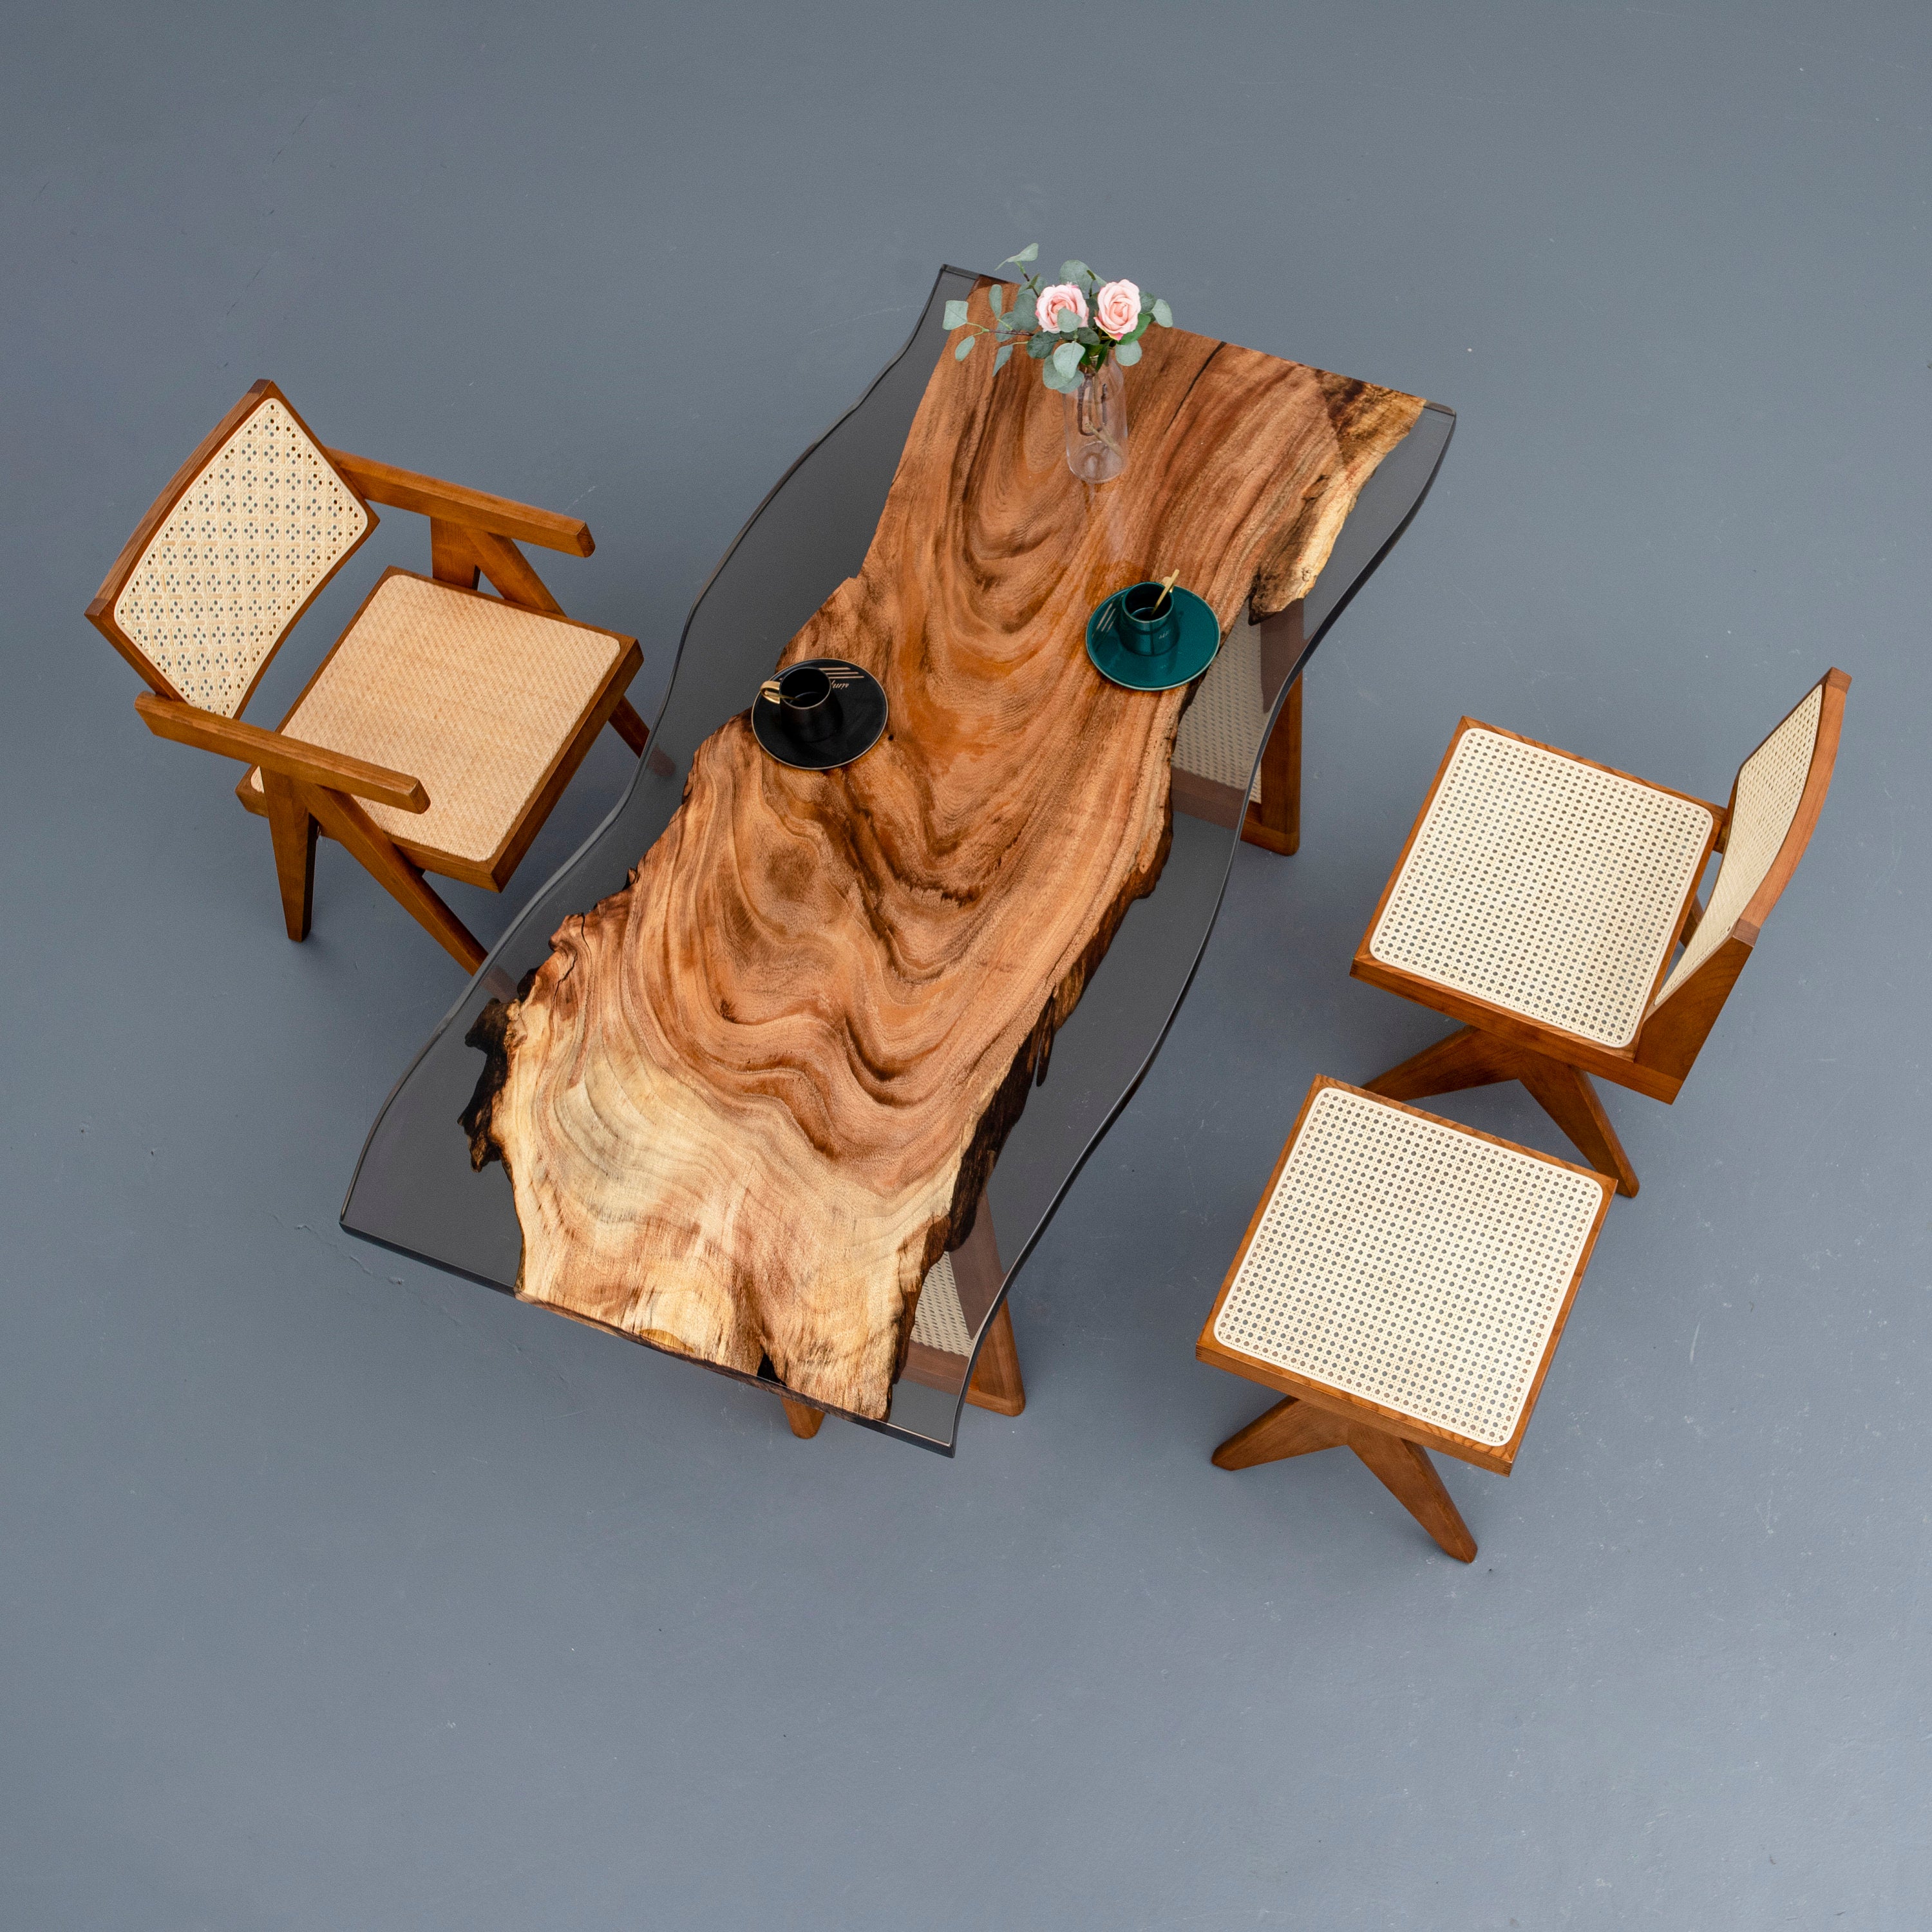 طاولة خشبية، طاولة من خشب الجوز، طاولة من قطعة واحدة من خشب الجوز،